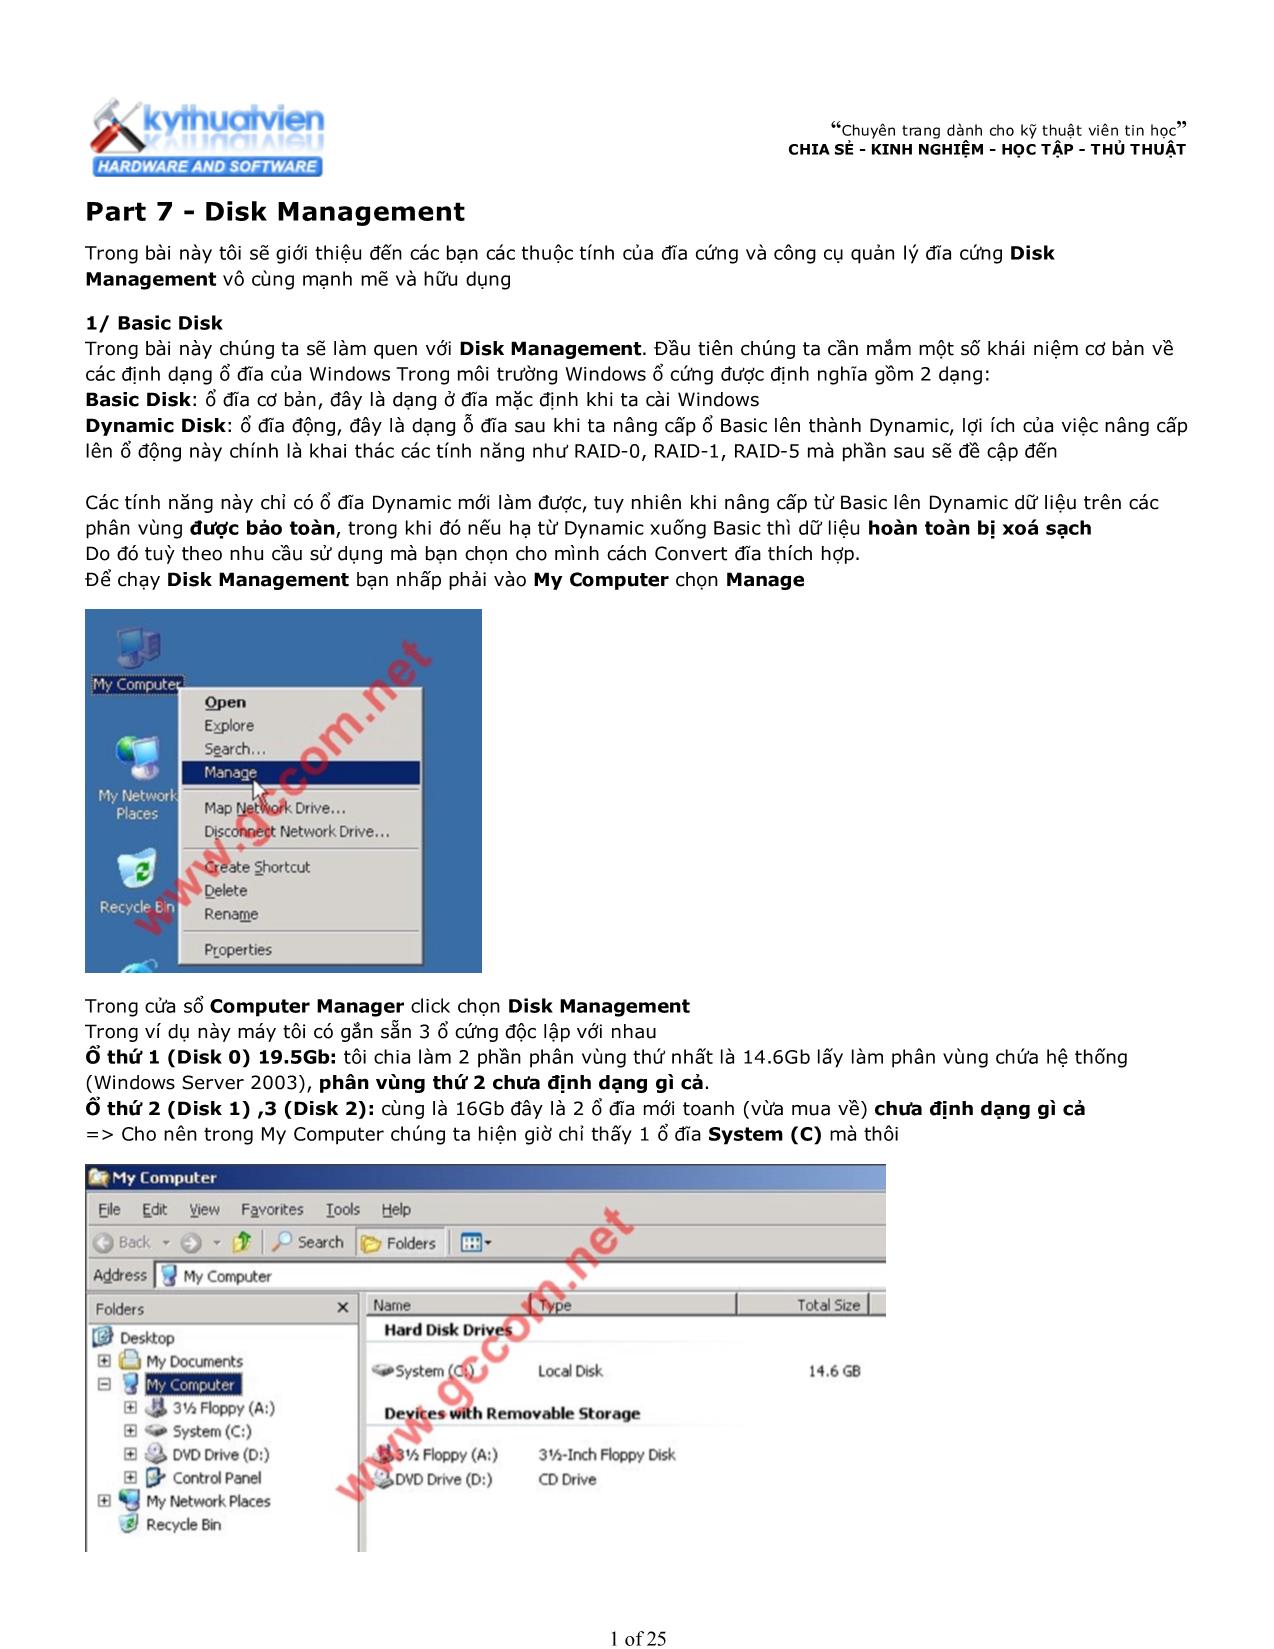 Disk Management trang 1